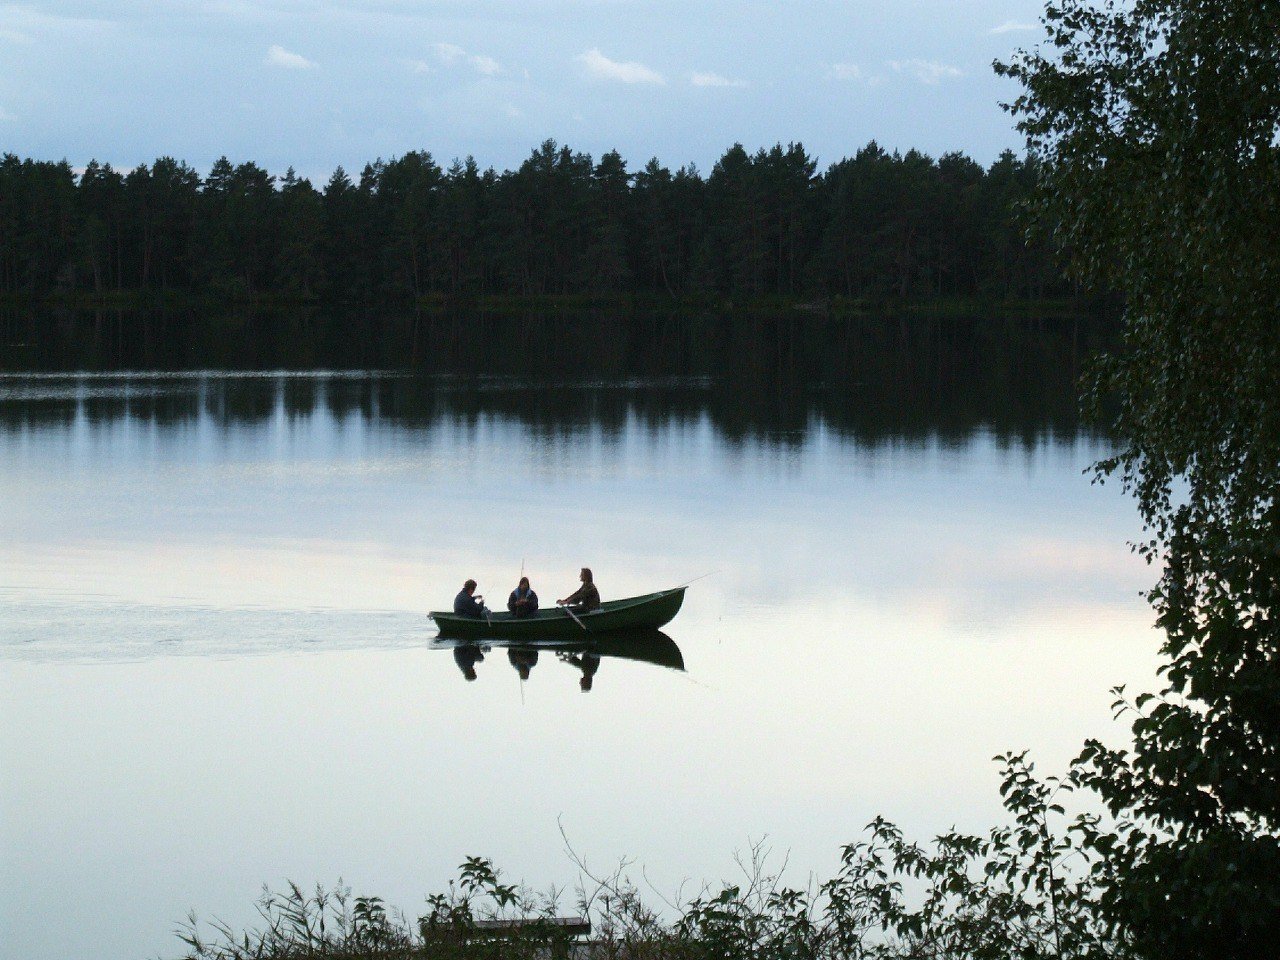 В «Ихтиологе» предлагают как летнюю, так и зимнюю рыбалку. Фото: Виктор Лисицын / Global Look Press / globallookpress.com